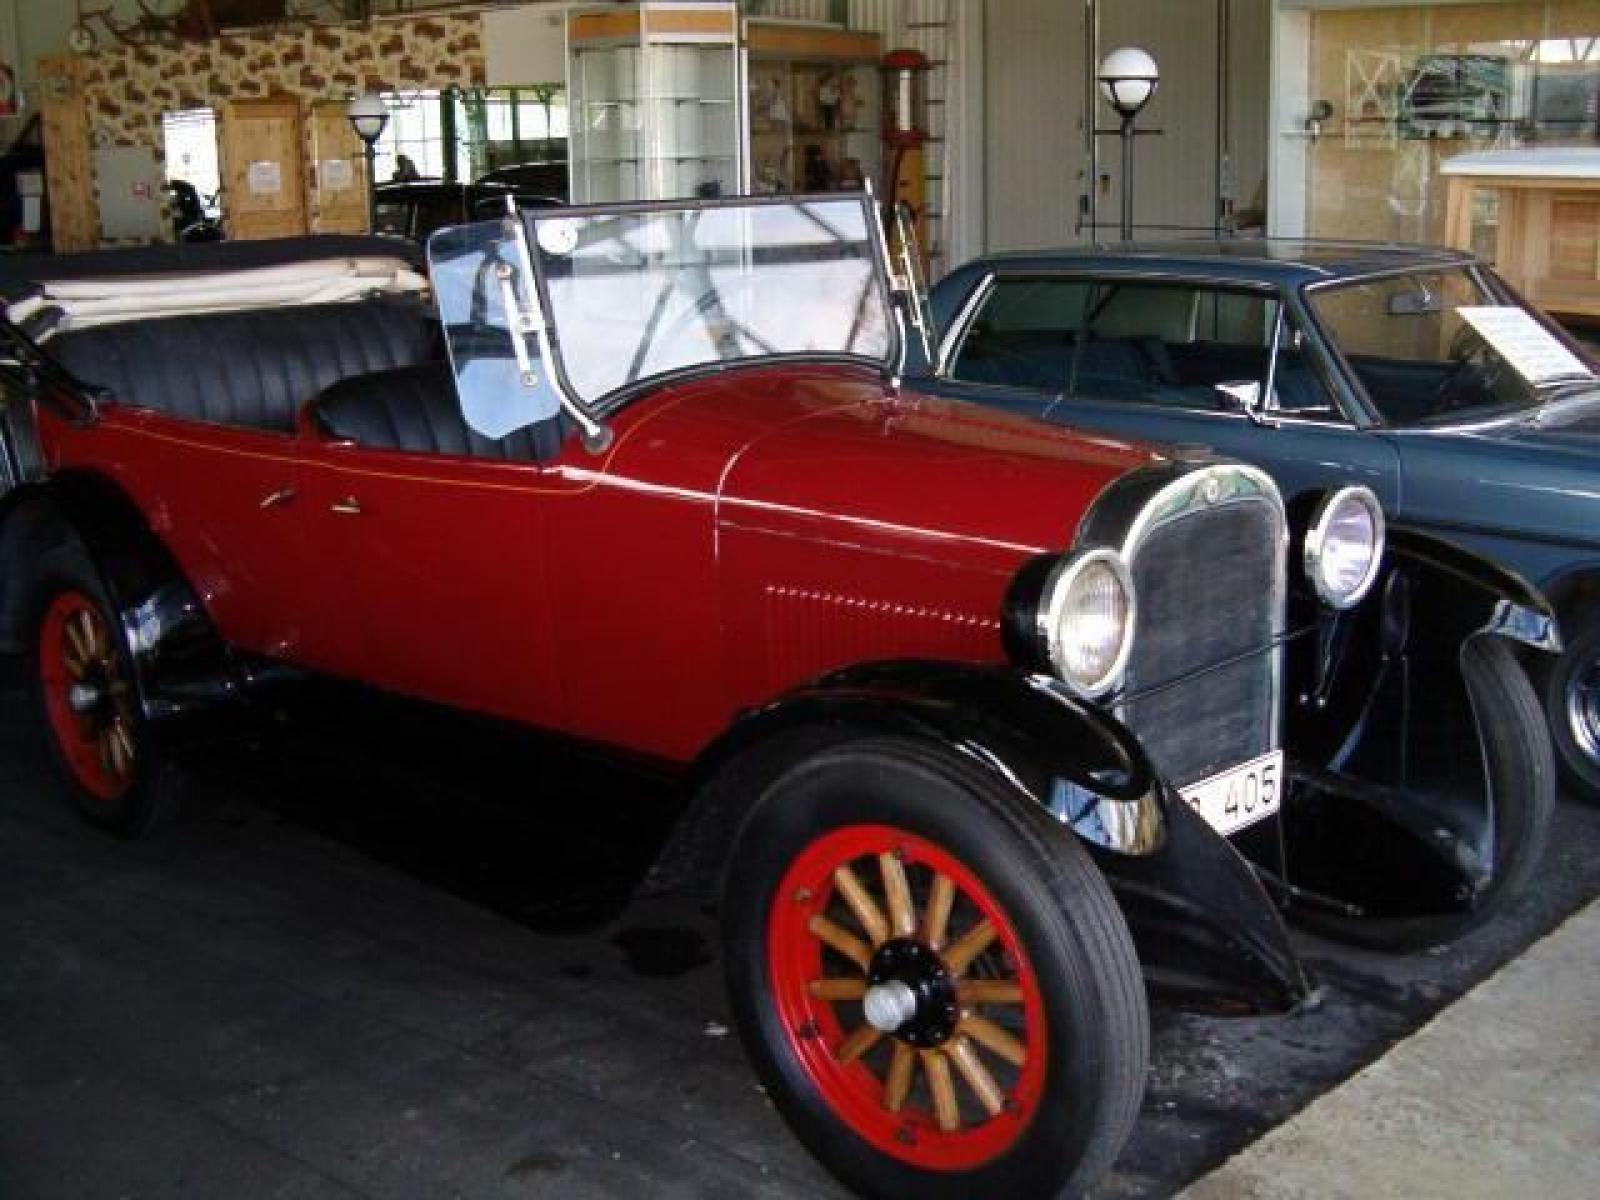 Bil på Ådalens Veteranbilmuseum